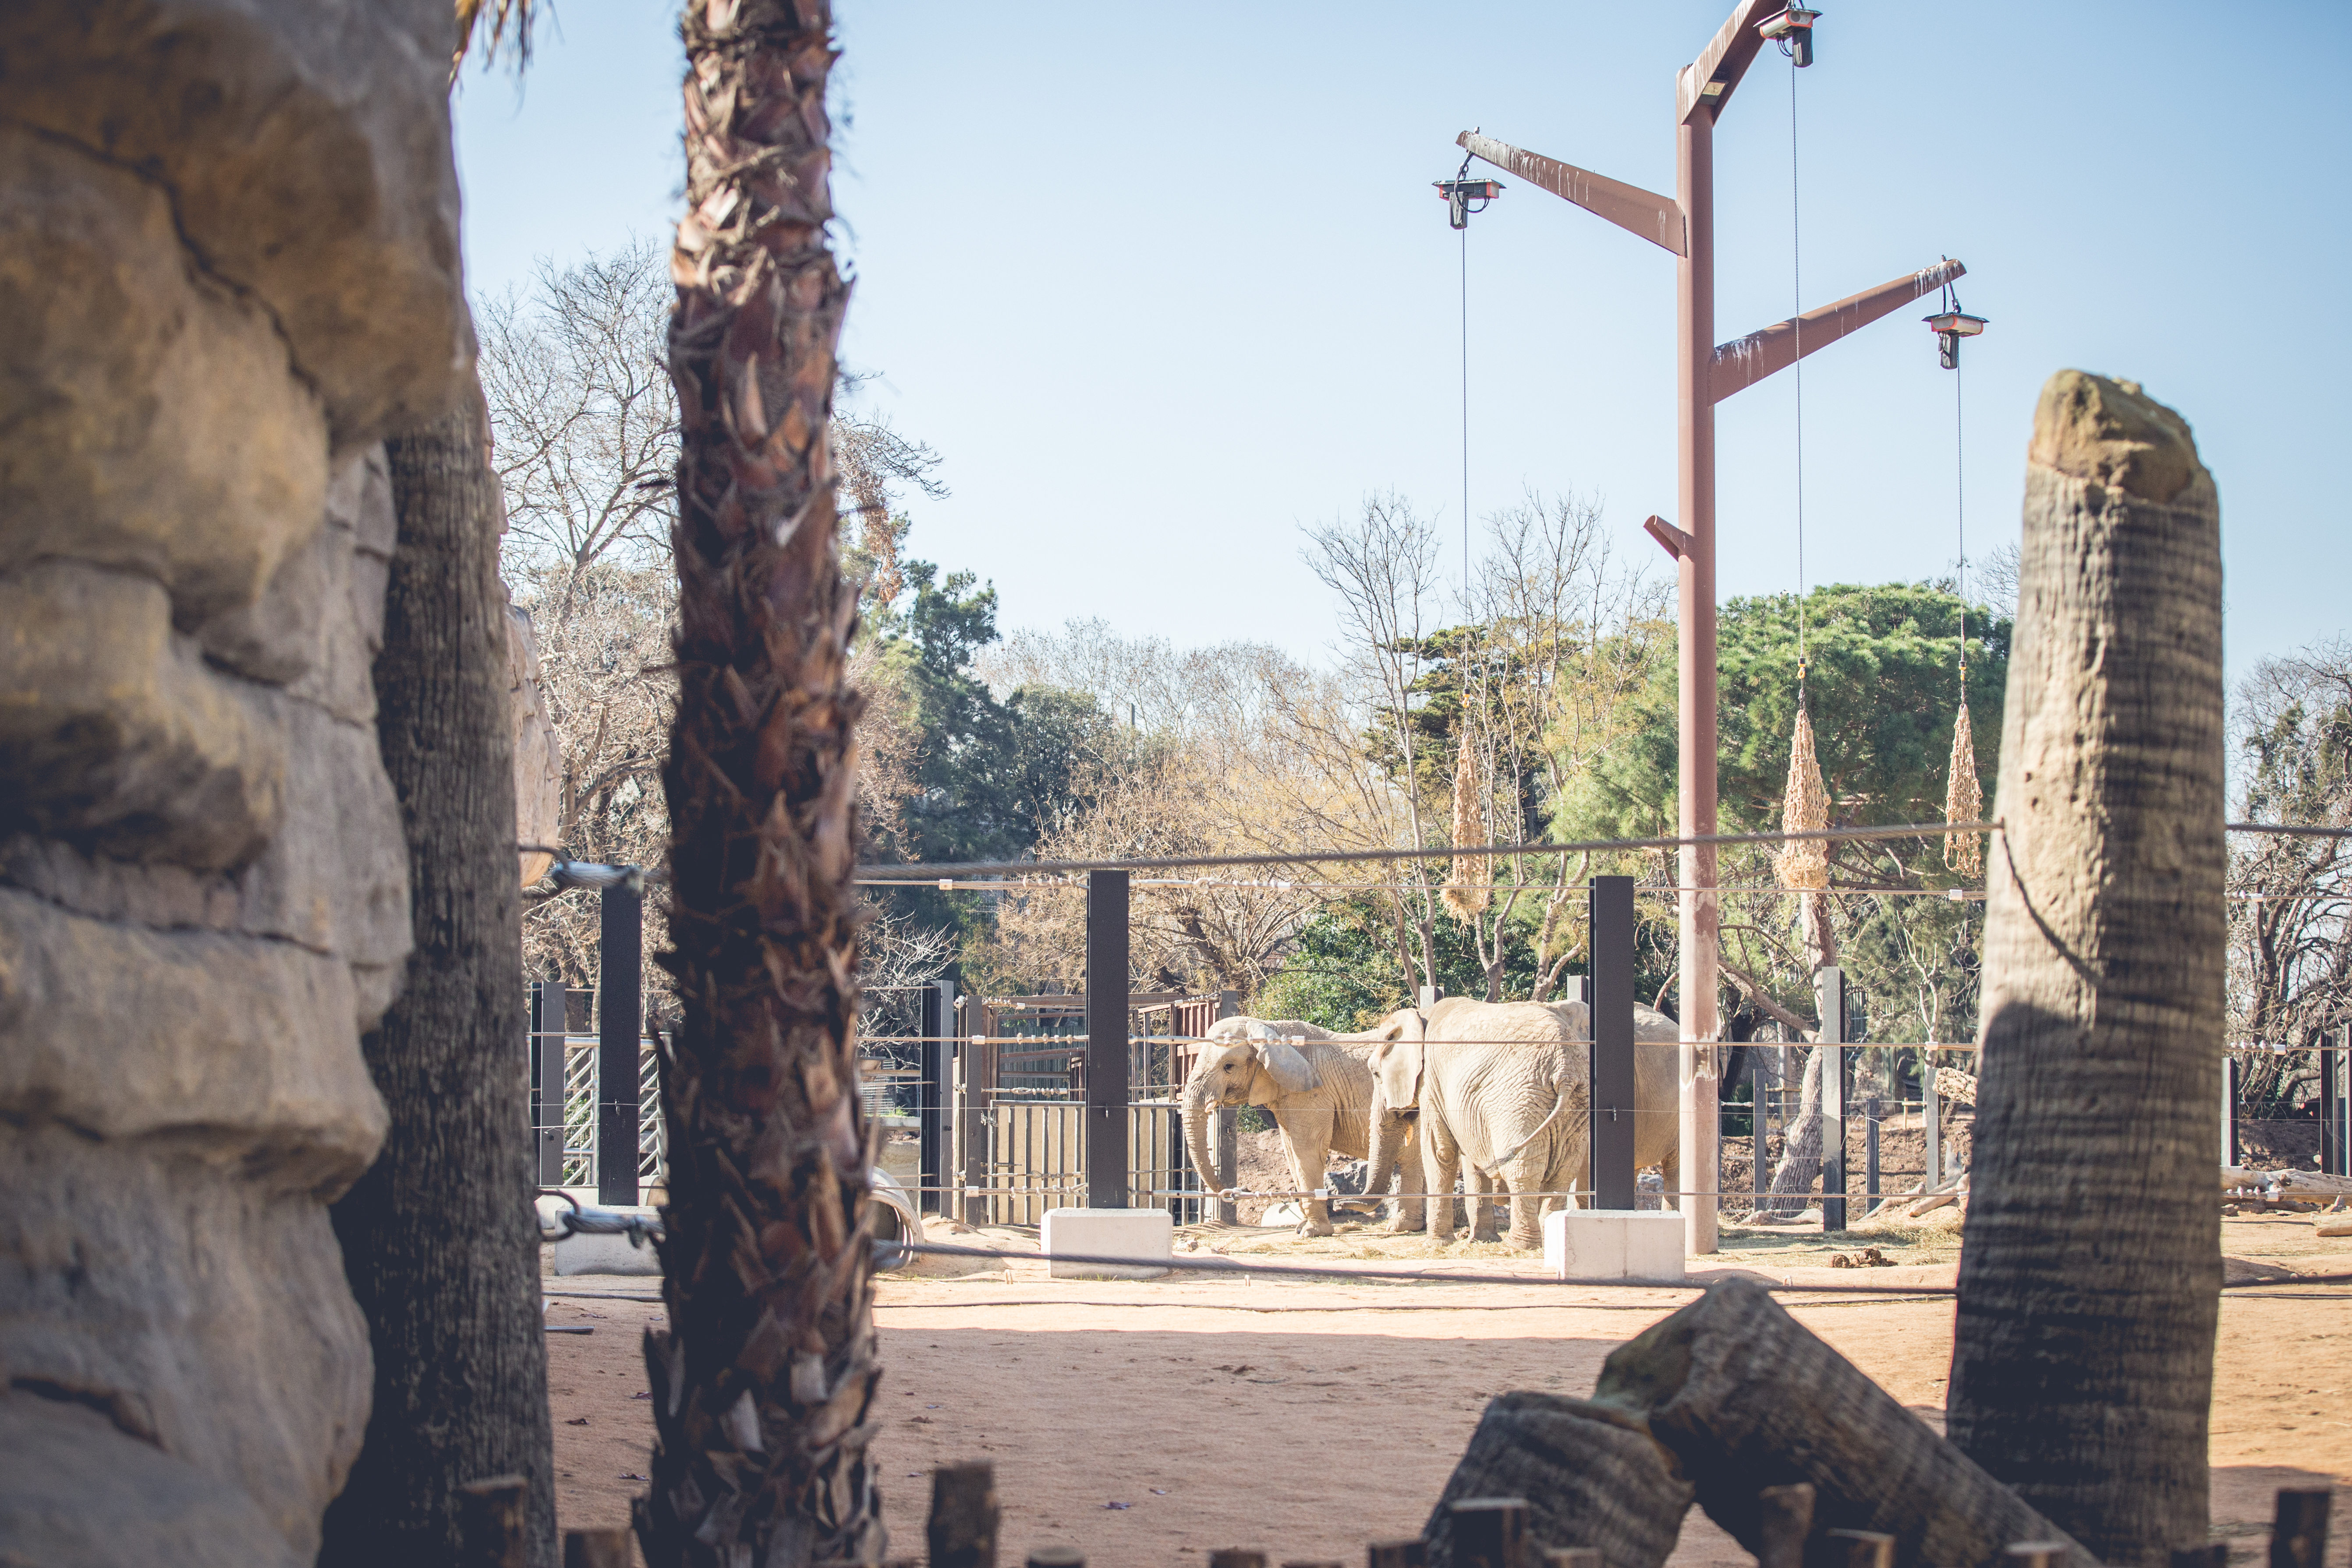 Elefants Zoo de Barcelona